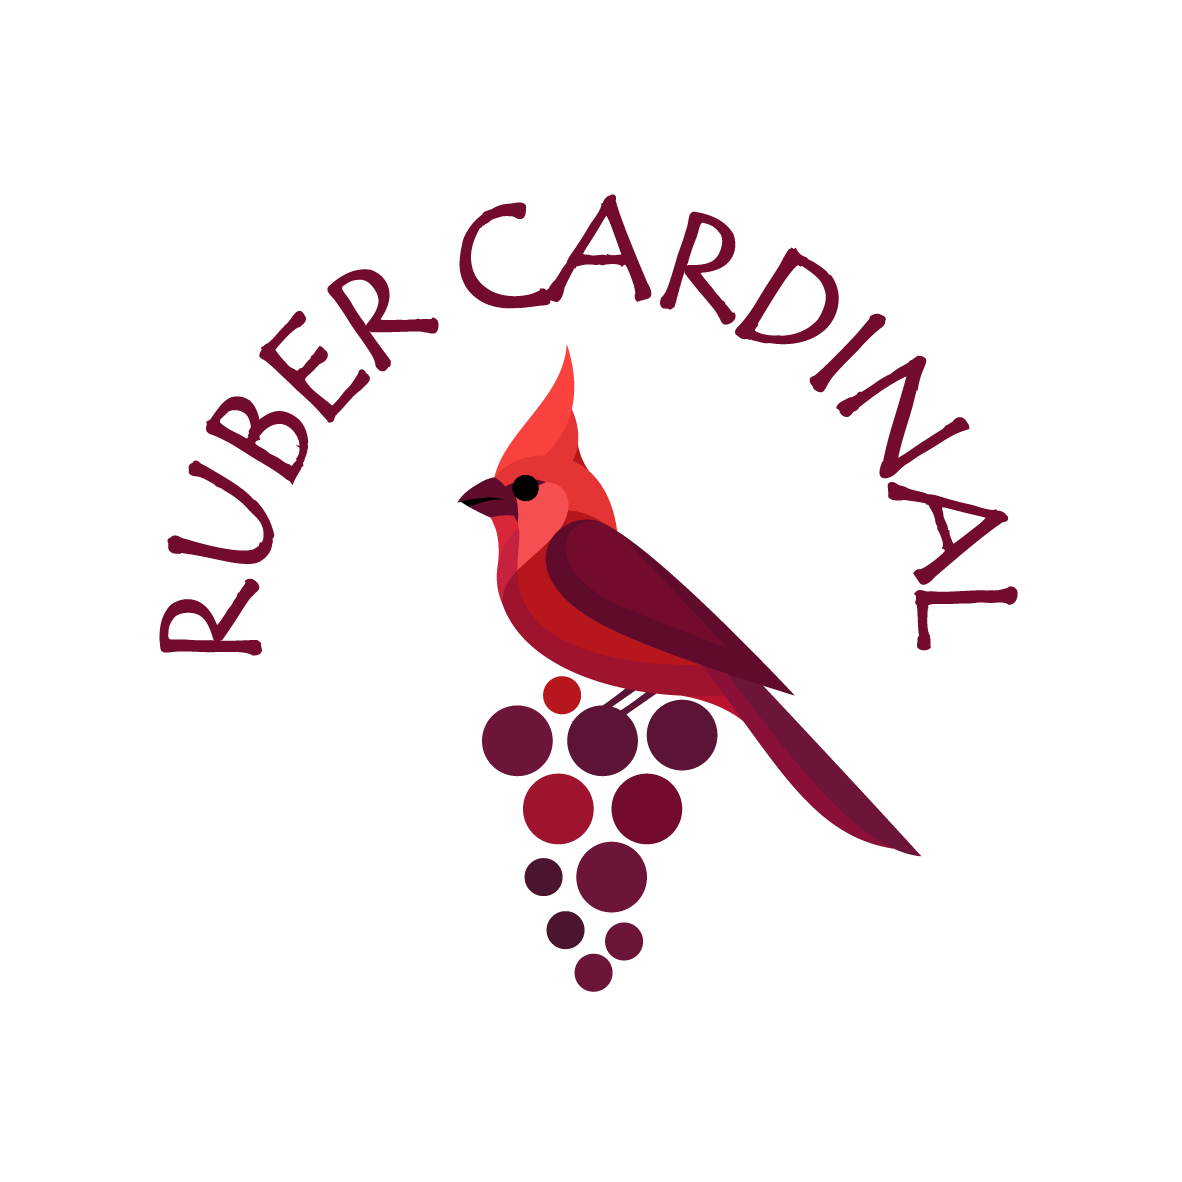 Ruber Cardinal